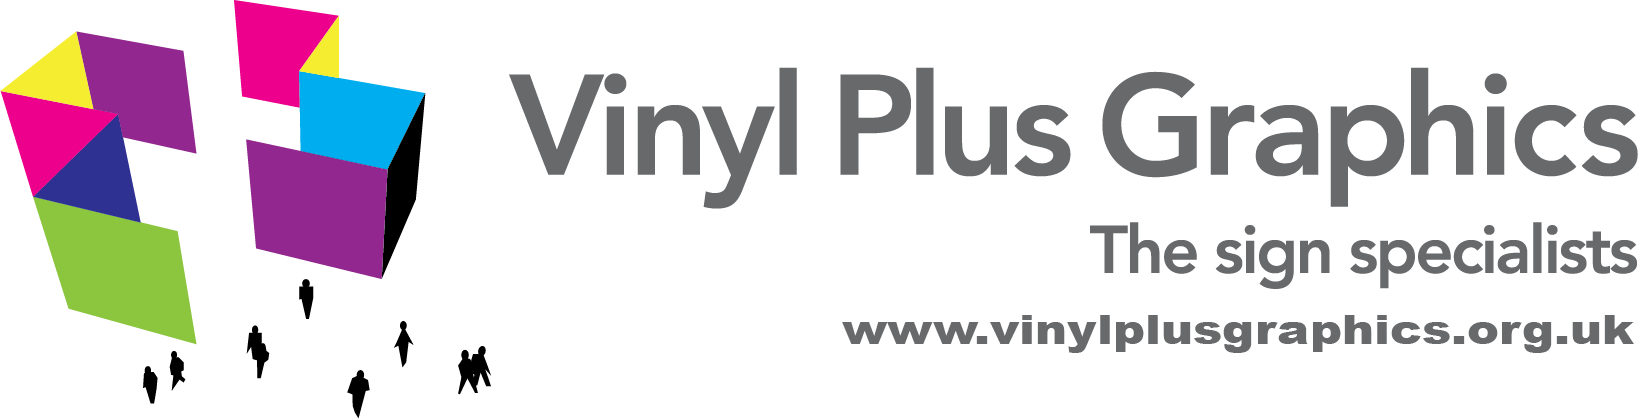 Vinyl Plus Graphics Ltd